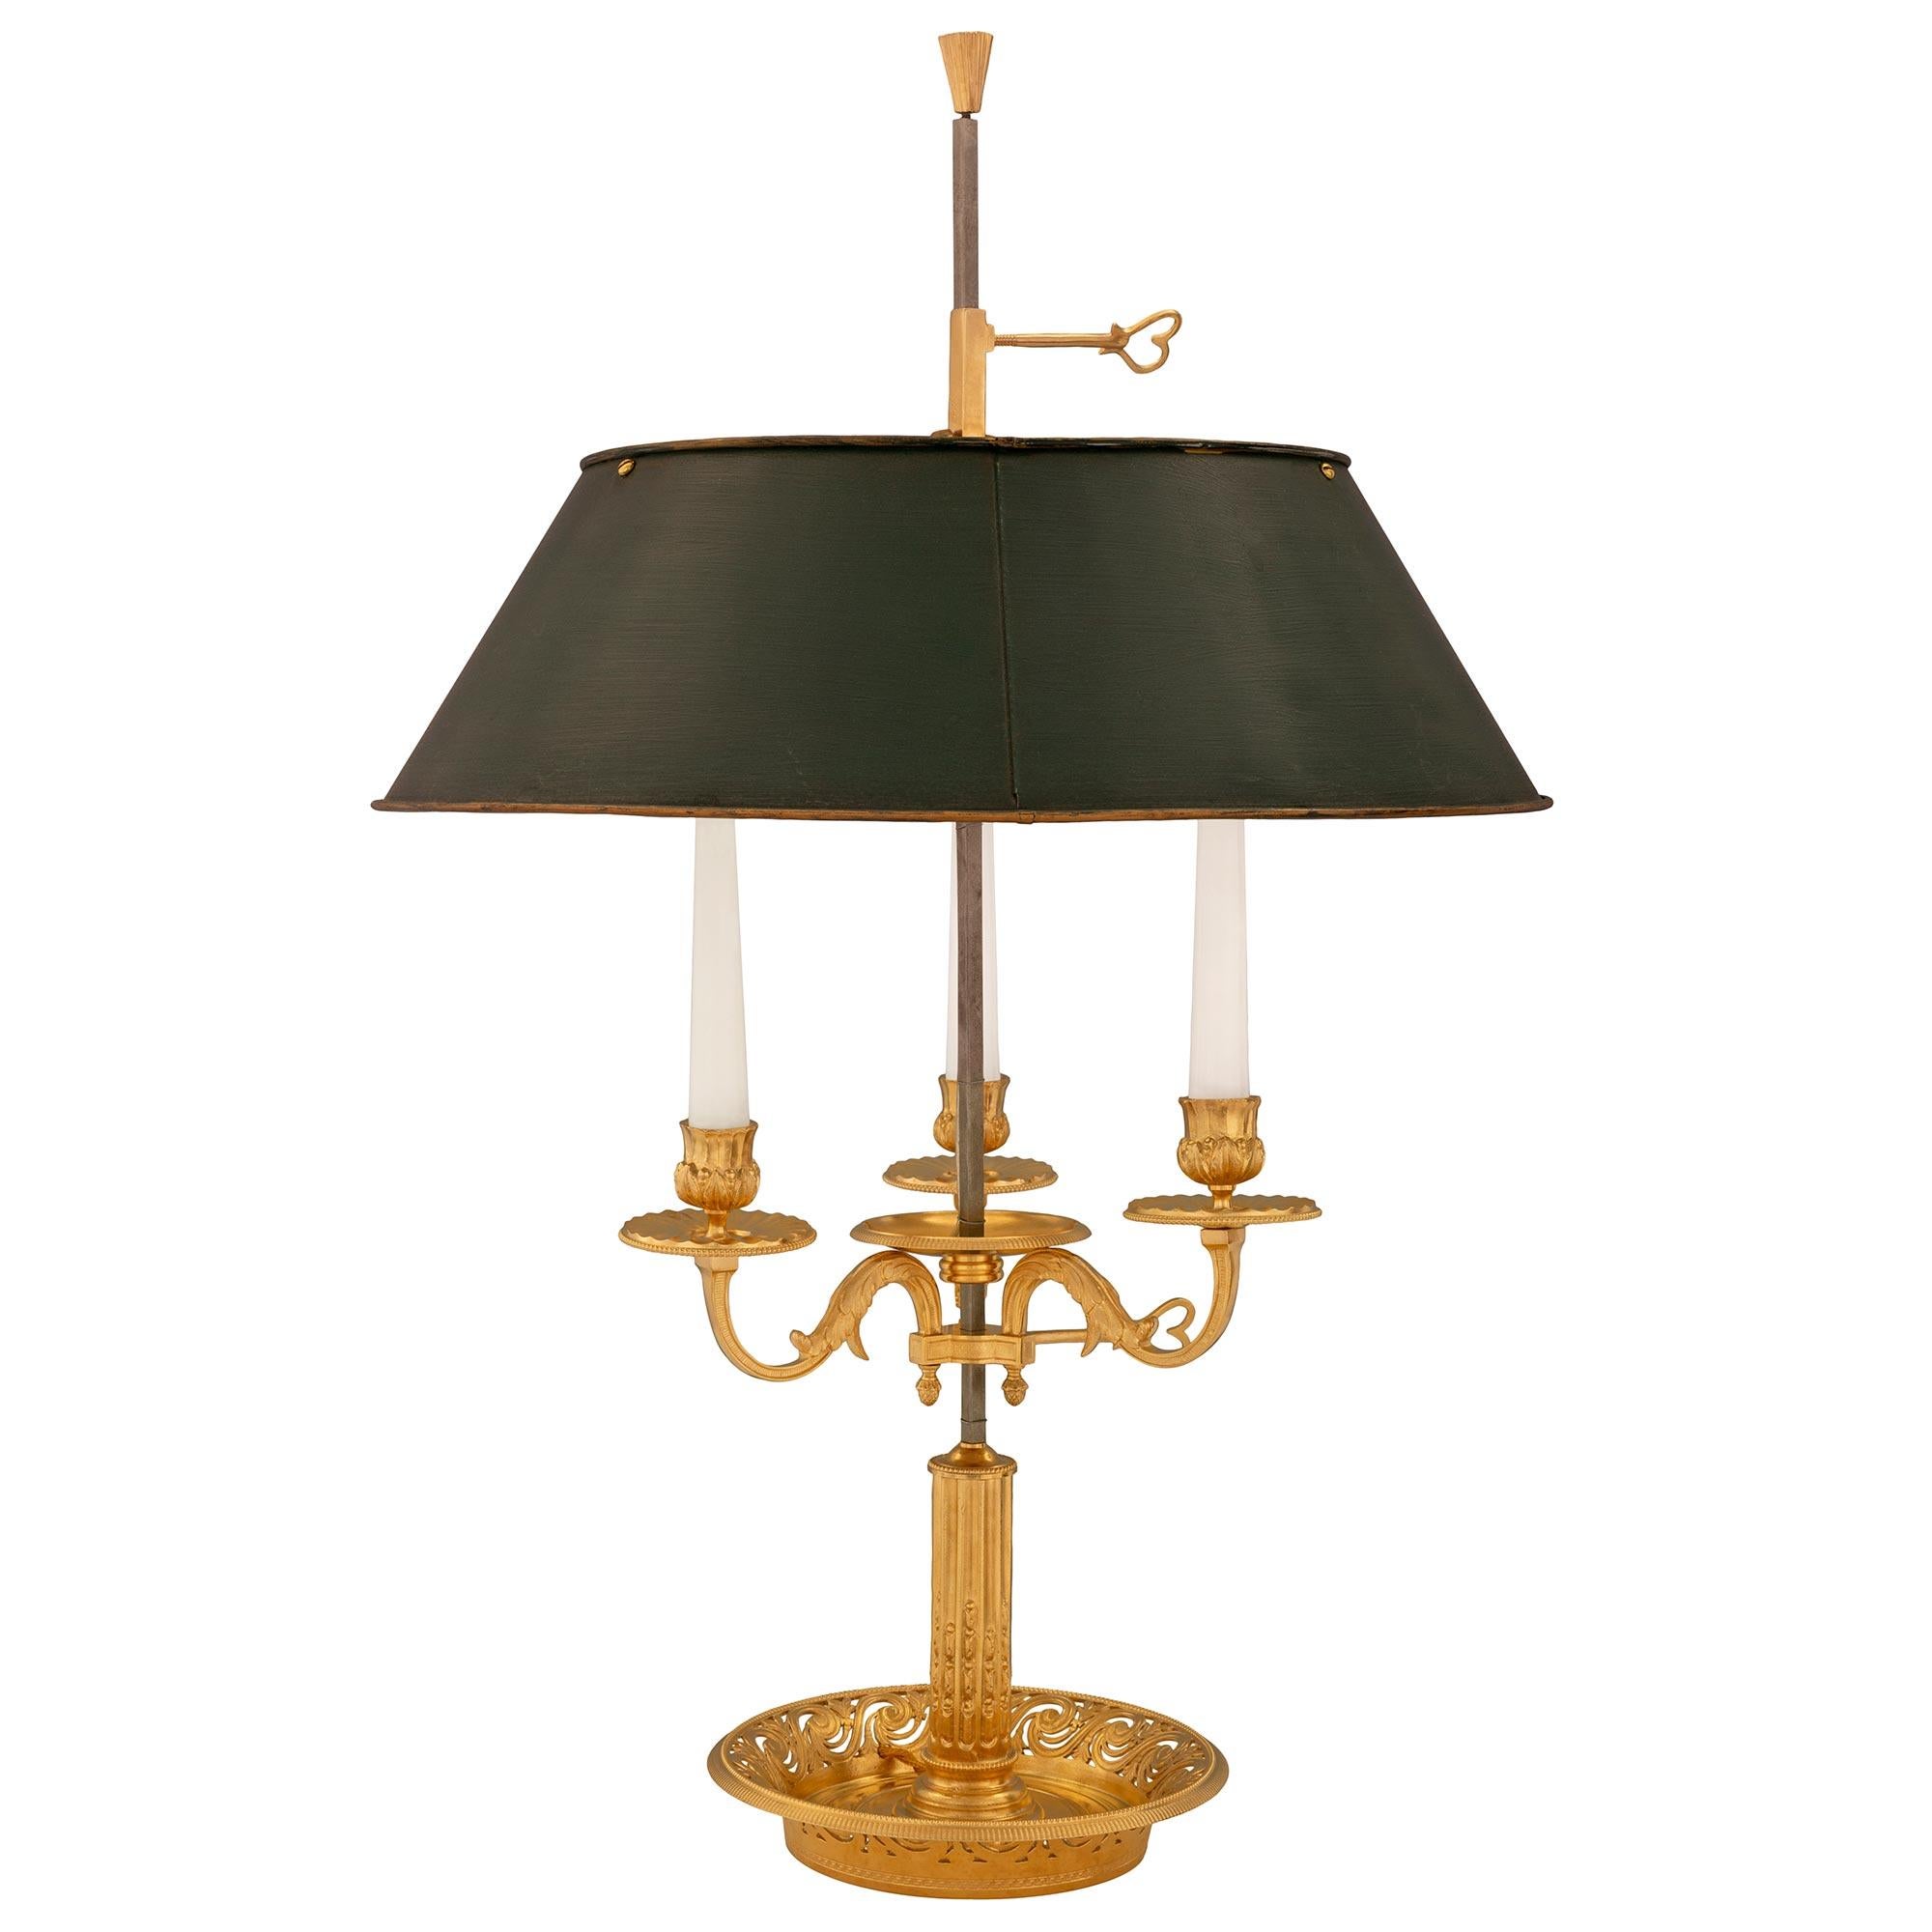 Une paire très élégante de lampes bouillotte de style Louis XVI du 19ème siècle, en bronze doré et en tole. Chaque lampe à trois bras est surélevée par une belle base circulaire percée avec de jolis motifs feuillus imbriqués et des bandes texturées